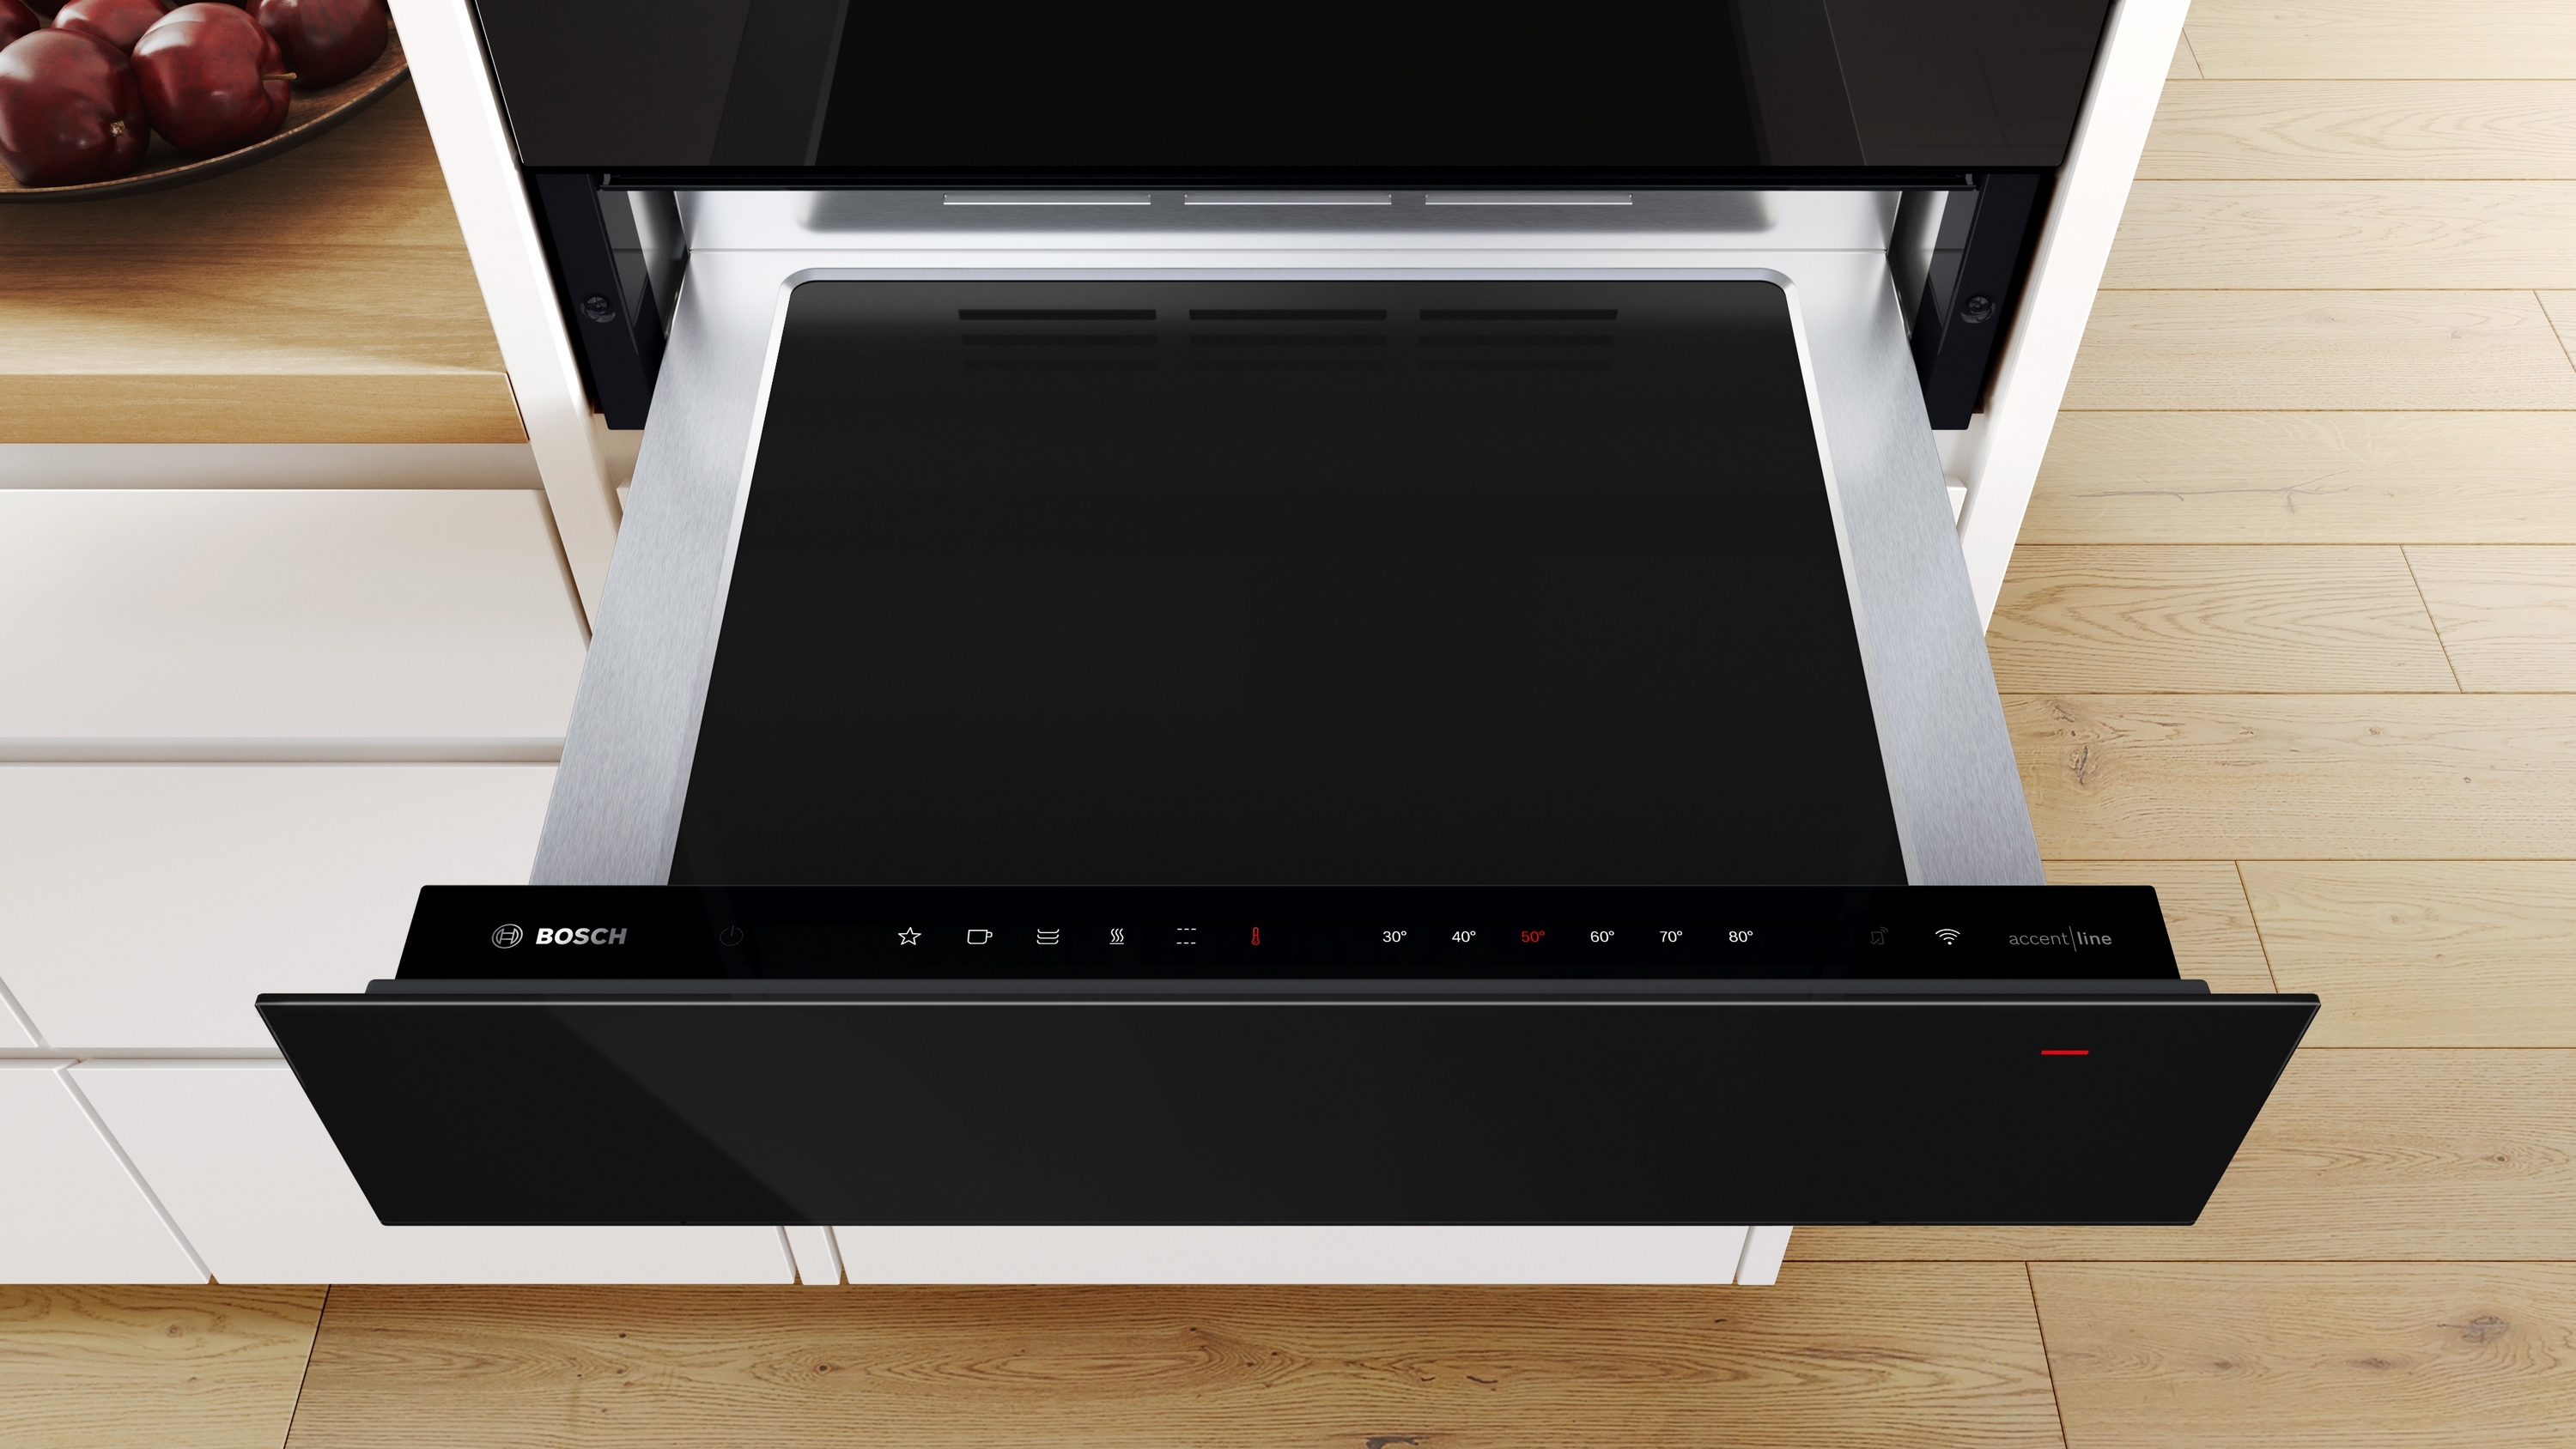 Series 8, Built-in warming drawer, 60 x 14 cm, Carbon black, BIC9101B1